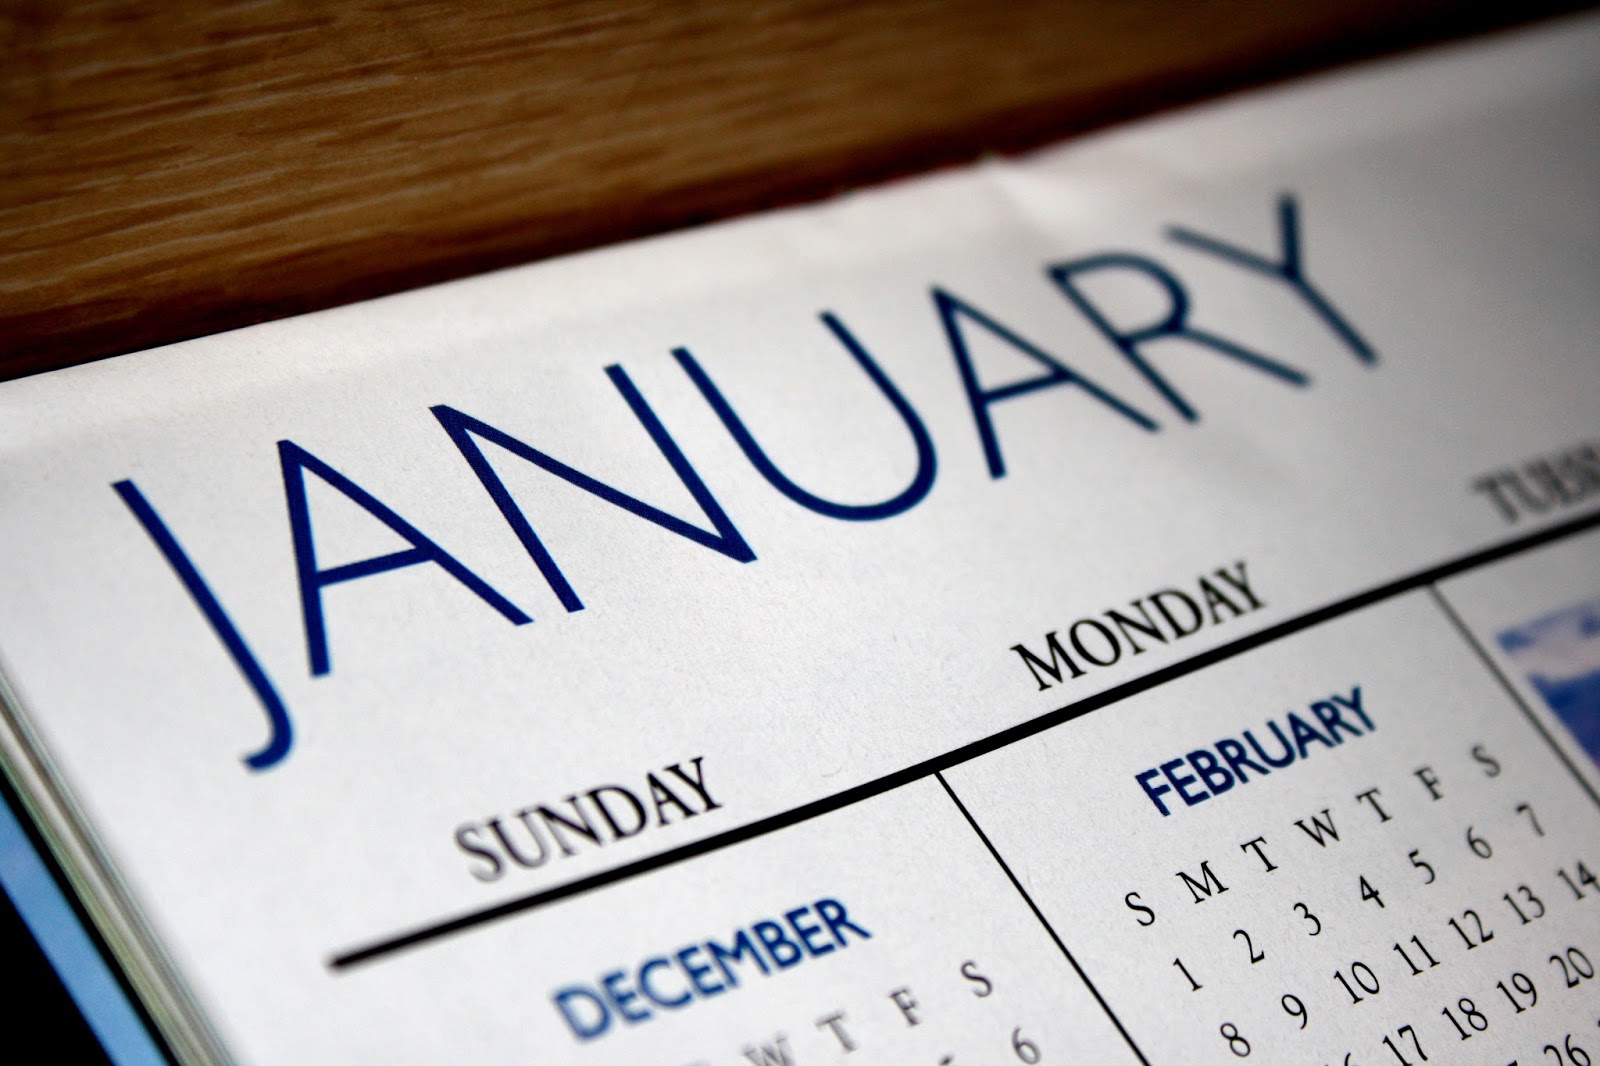 Ce an este conform diferitelor calendare ale lumii?